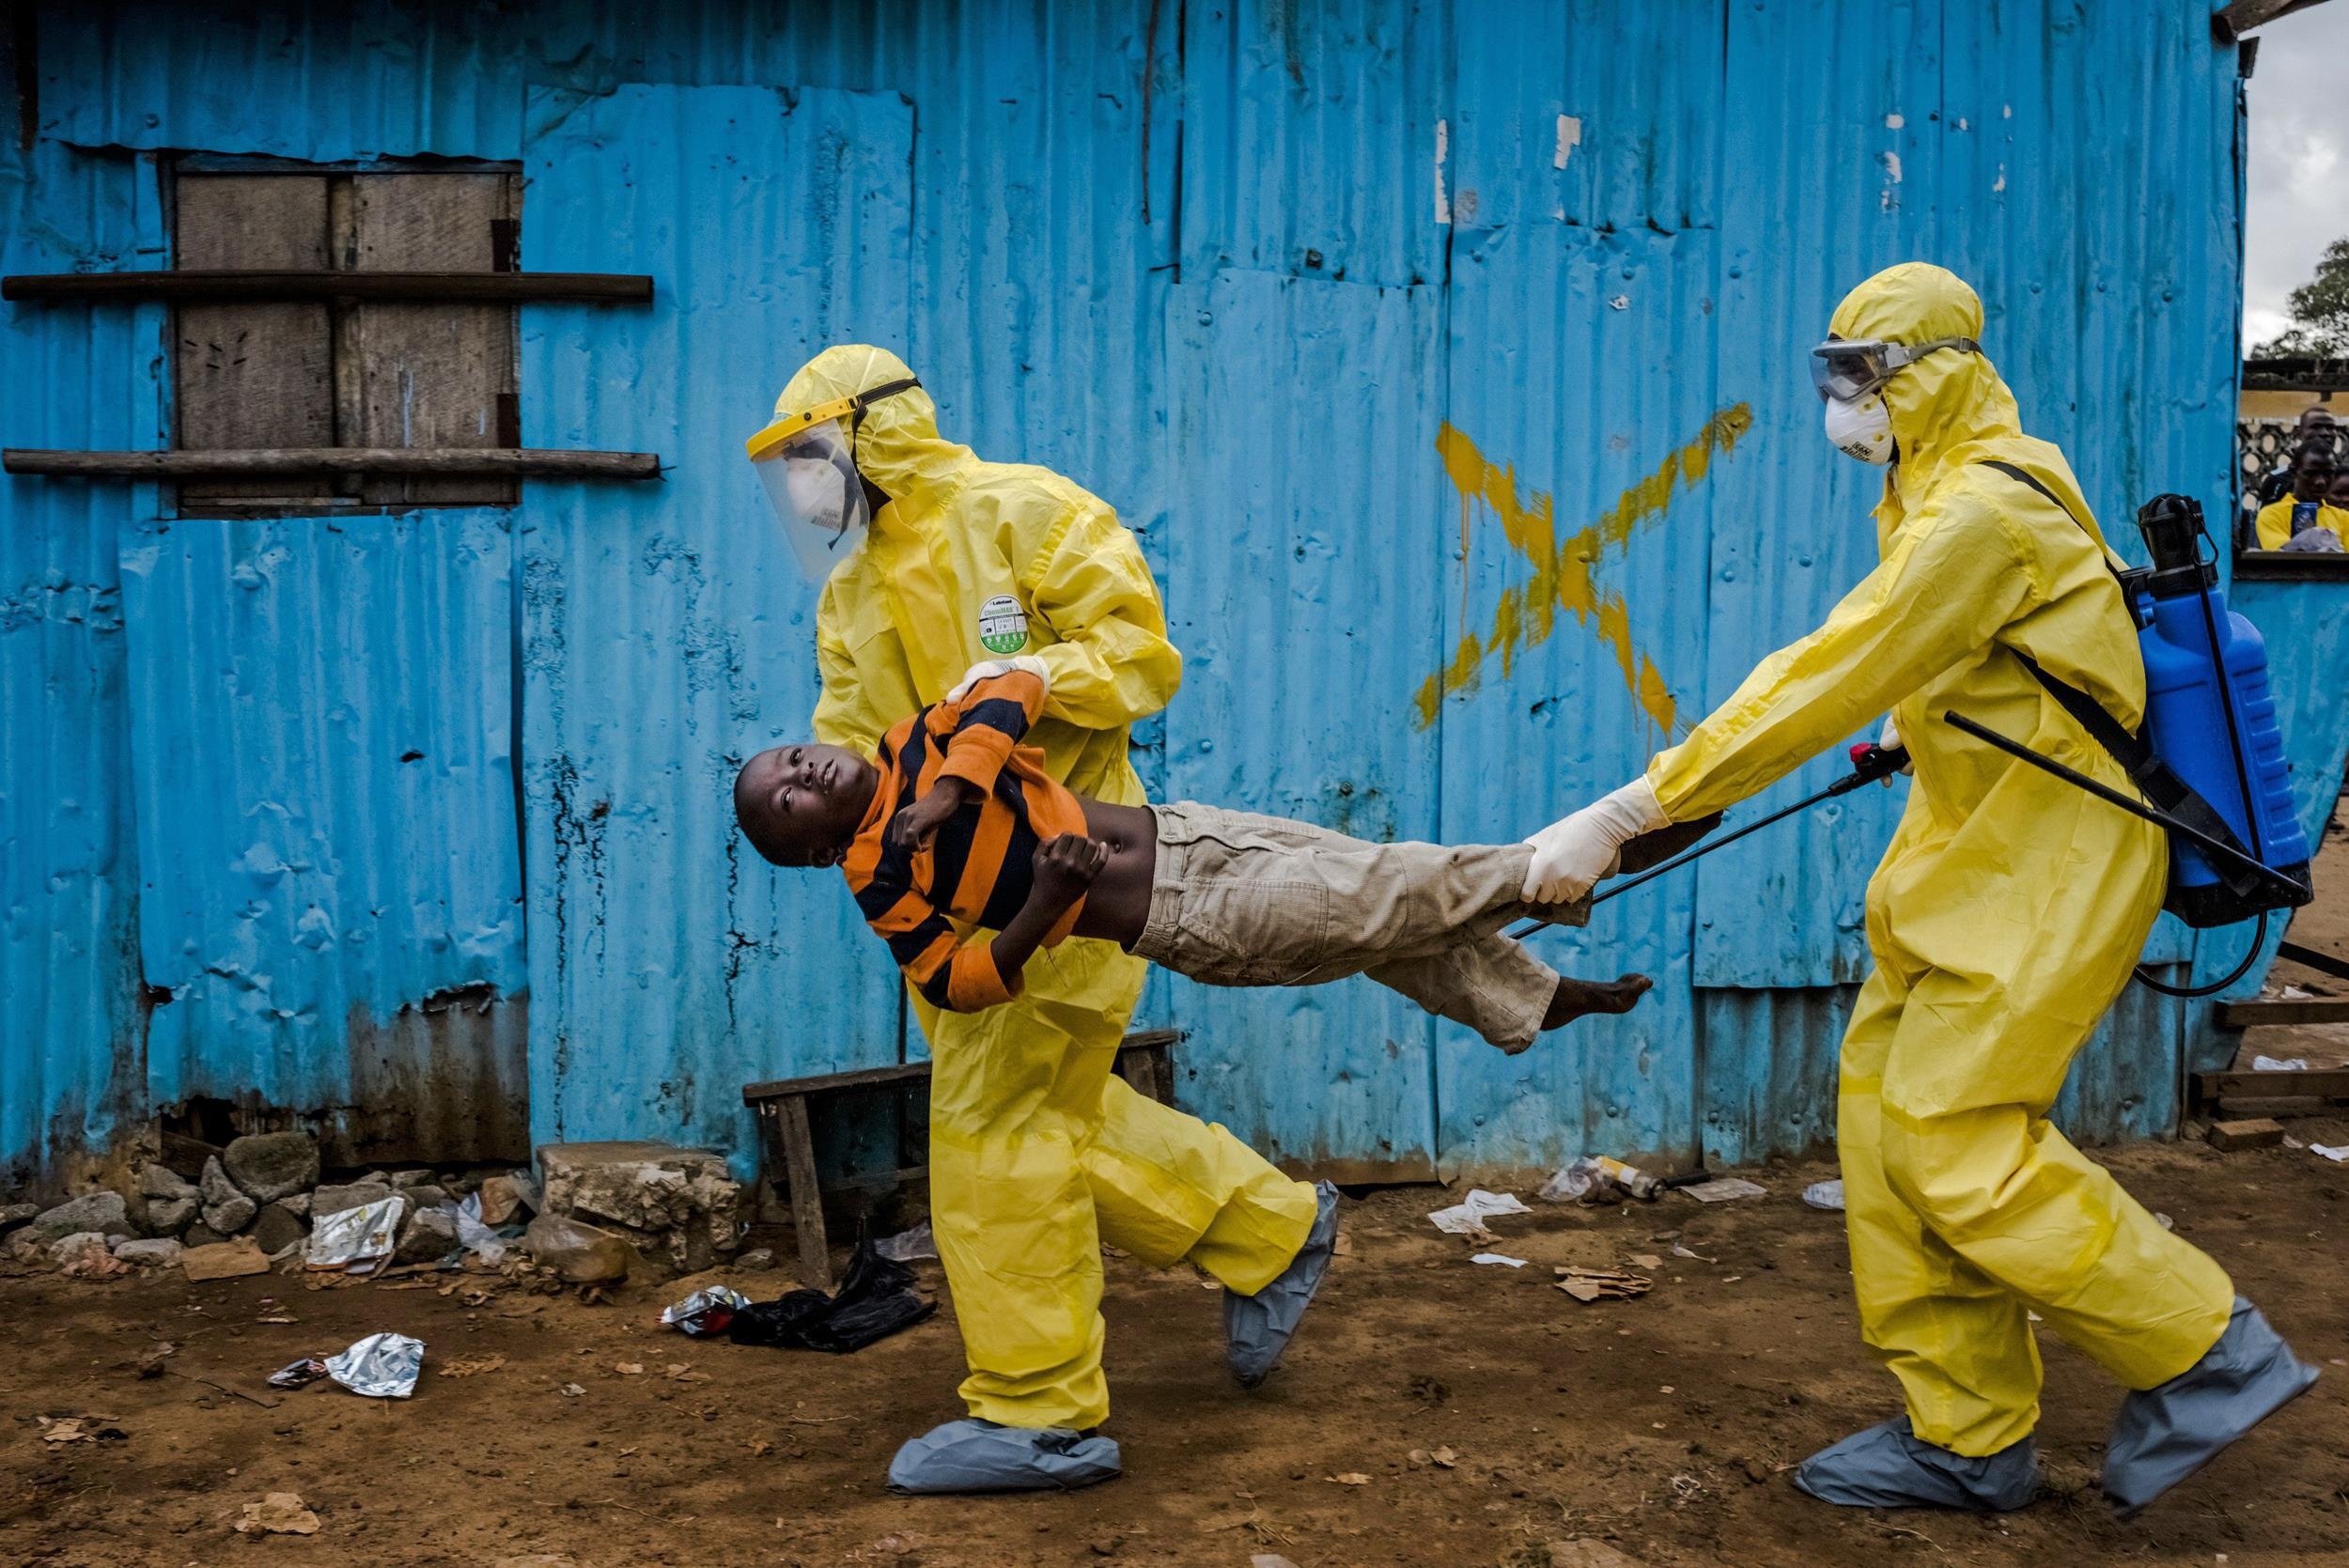 埃博拉病毒,2014年,美国,新闻,感染壁纸高清原图查看